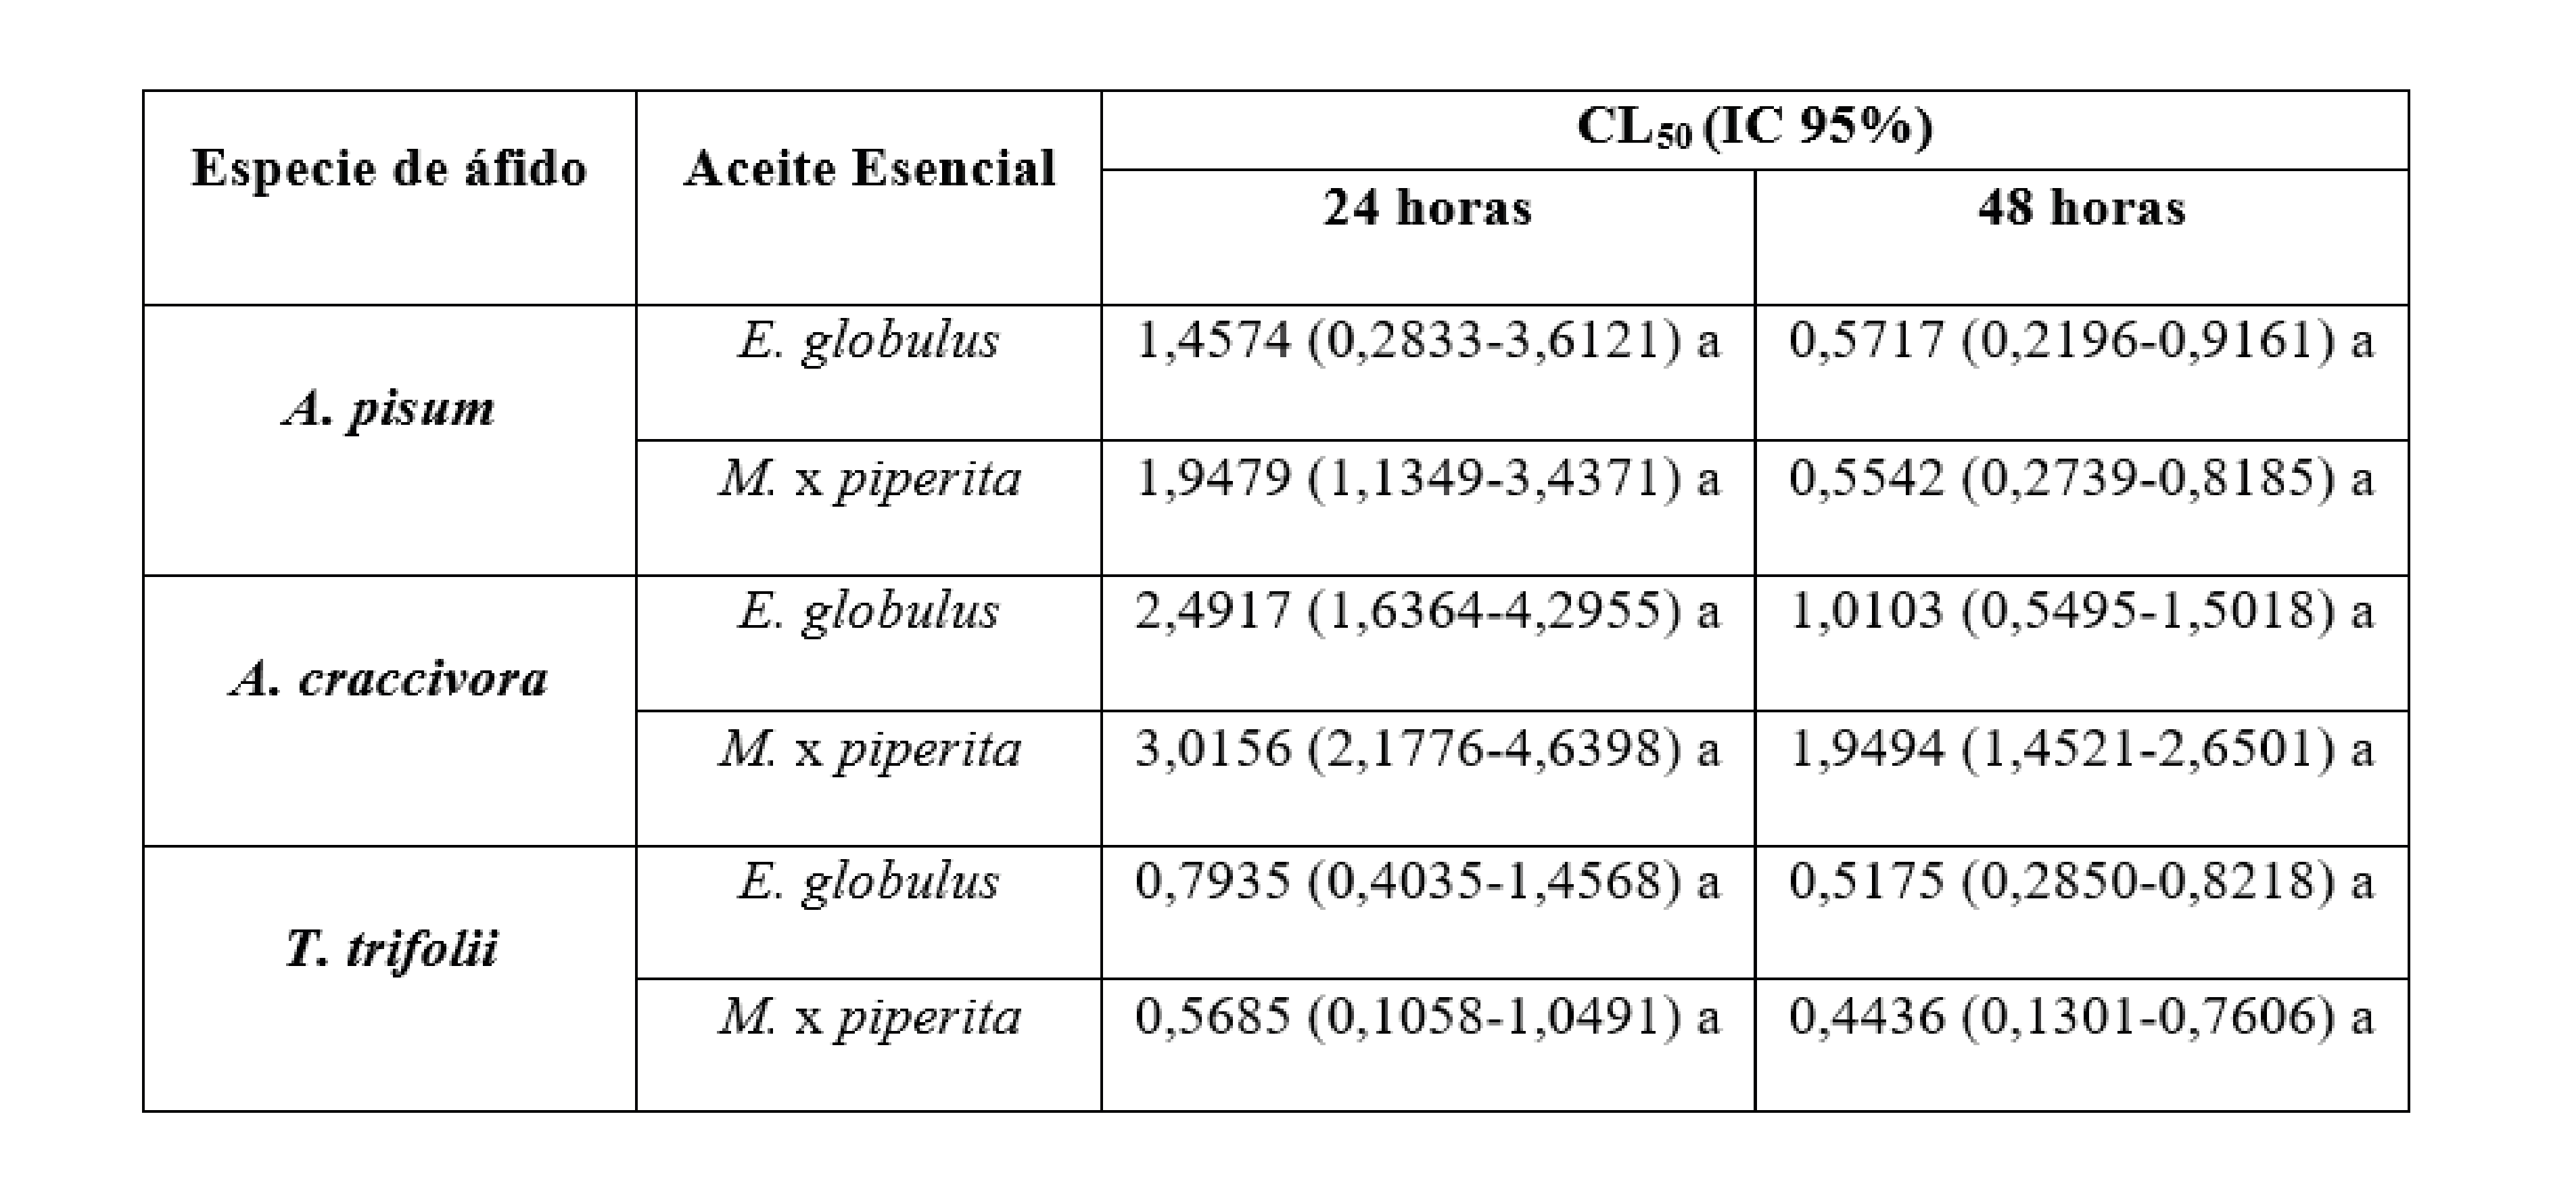 Toxicidad por contacto de los aceites esenciales sobre A.
pisum, A. craccivora y T. trifolii; CL50: concentración letal 50 (%
p v-1); IC 95%: intervalo de confianza del 95%. Para cada tiempo de
evaluación, valores de CL50 seguidos por la misma letra no difieren
significativamente (NSIC, p ≥ 0,05). 

/ Contact toxicity
of essentials oils on A. pisum, A. craccivora and T. trifolii; LC50:
lethal concentration 50 (% w v-1); 95% CL: 95% confidence intervals.
Within each evaluation time, LC50 values followed by the same letter
are not significantly different (NSIC, p ≥ 0,05).